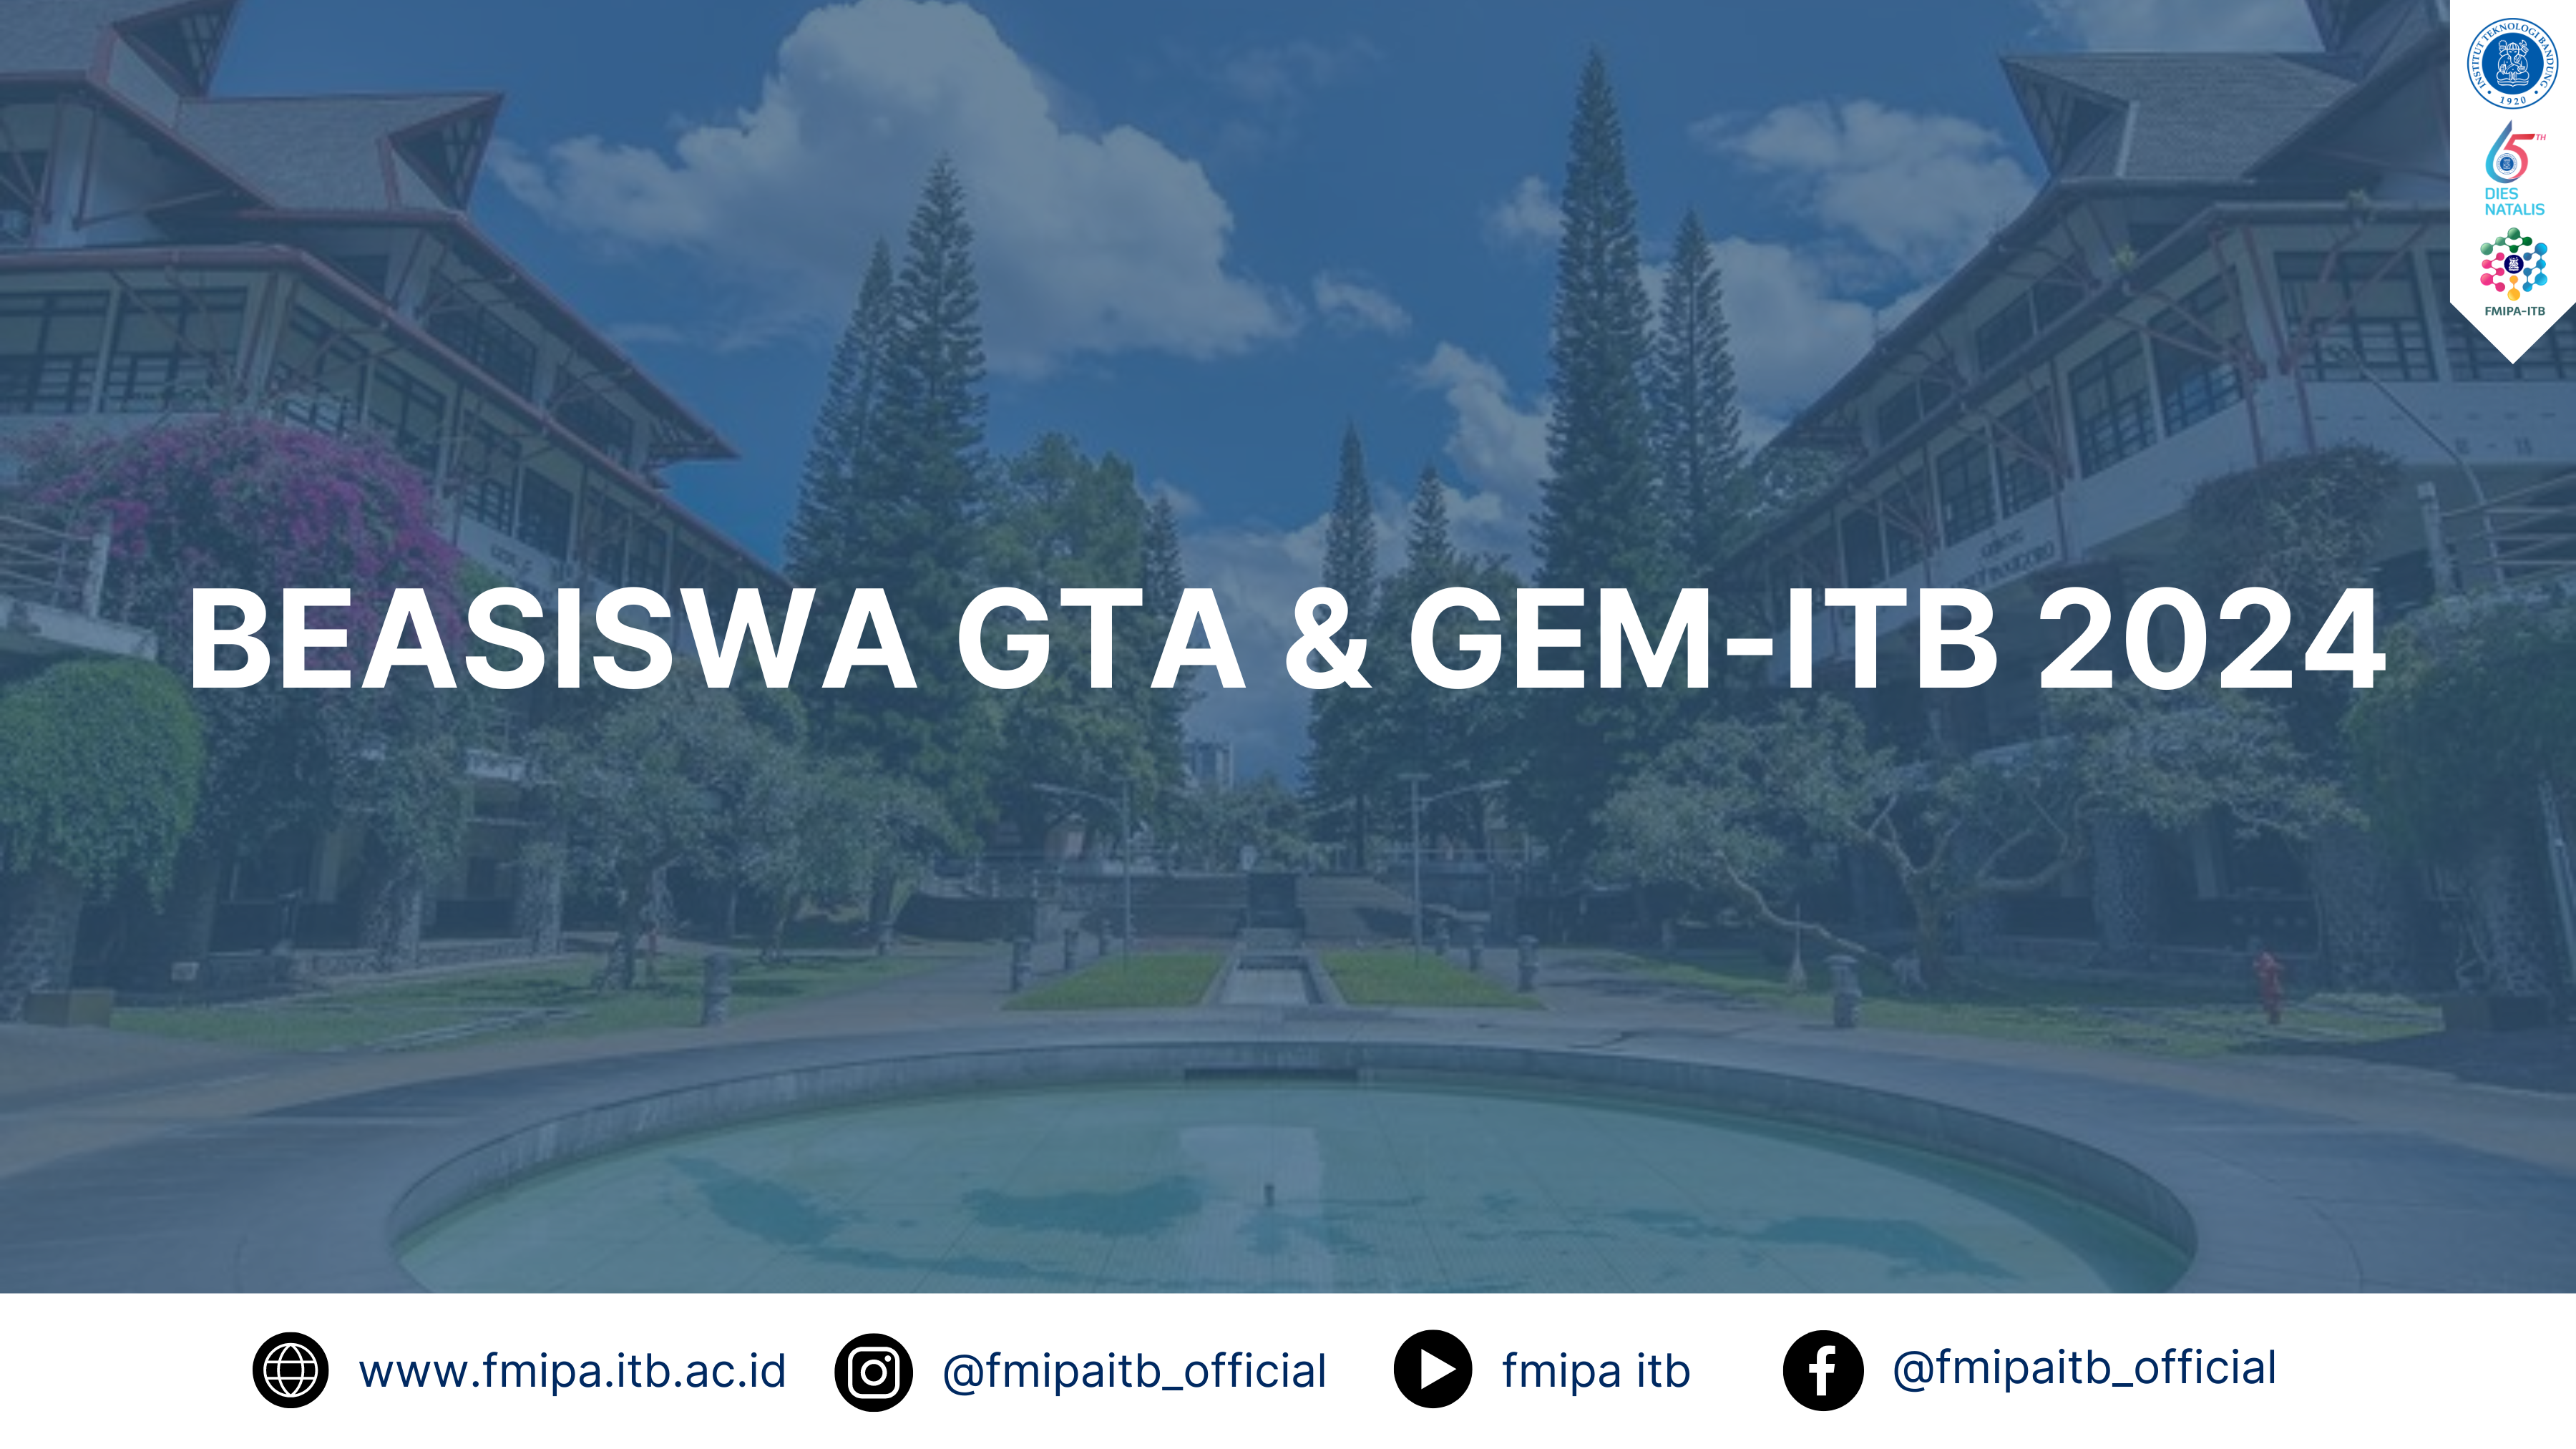 INFORMASI BEASISWA GTA & GEM-ITB 2024